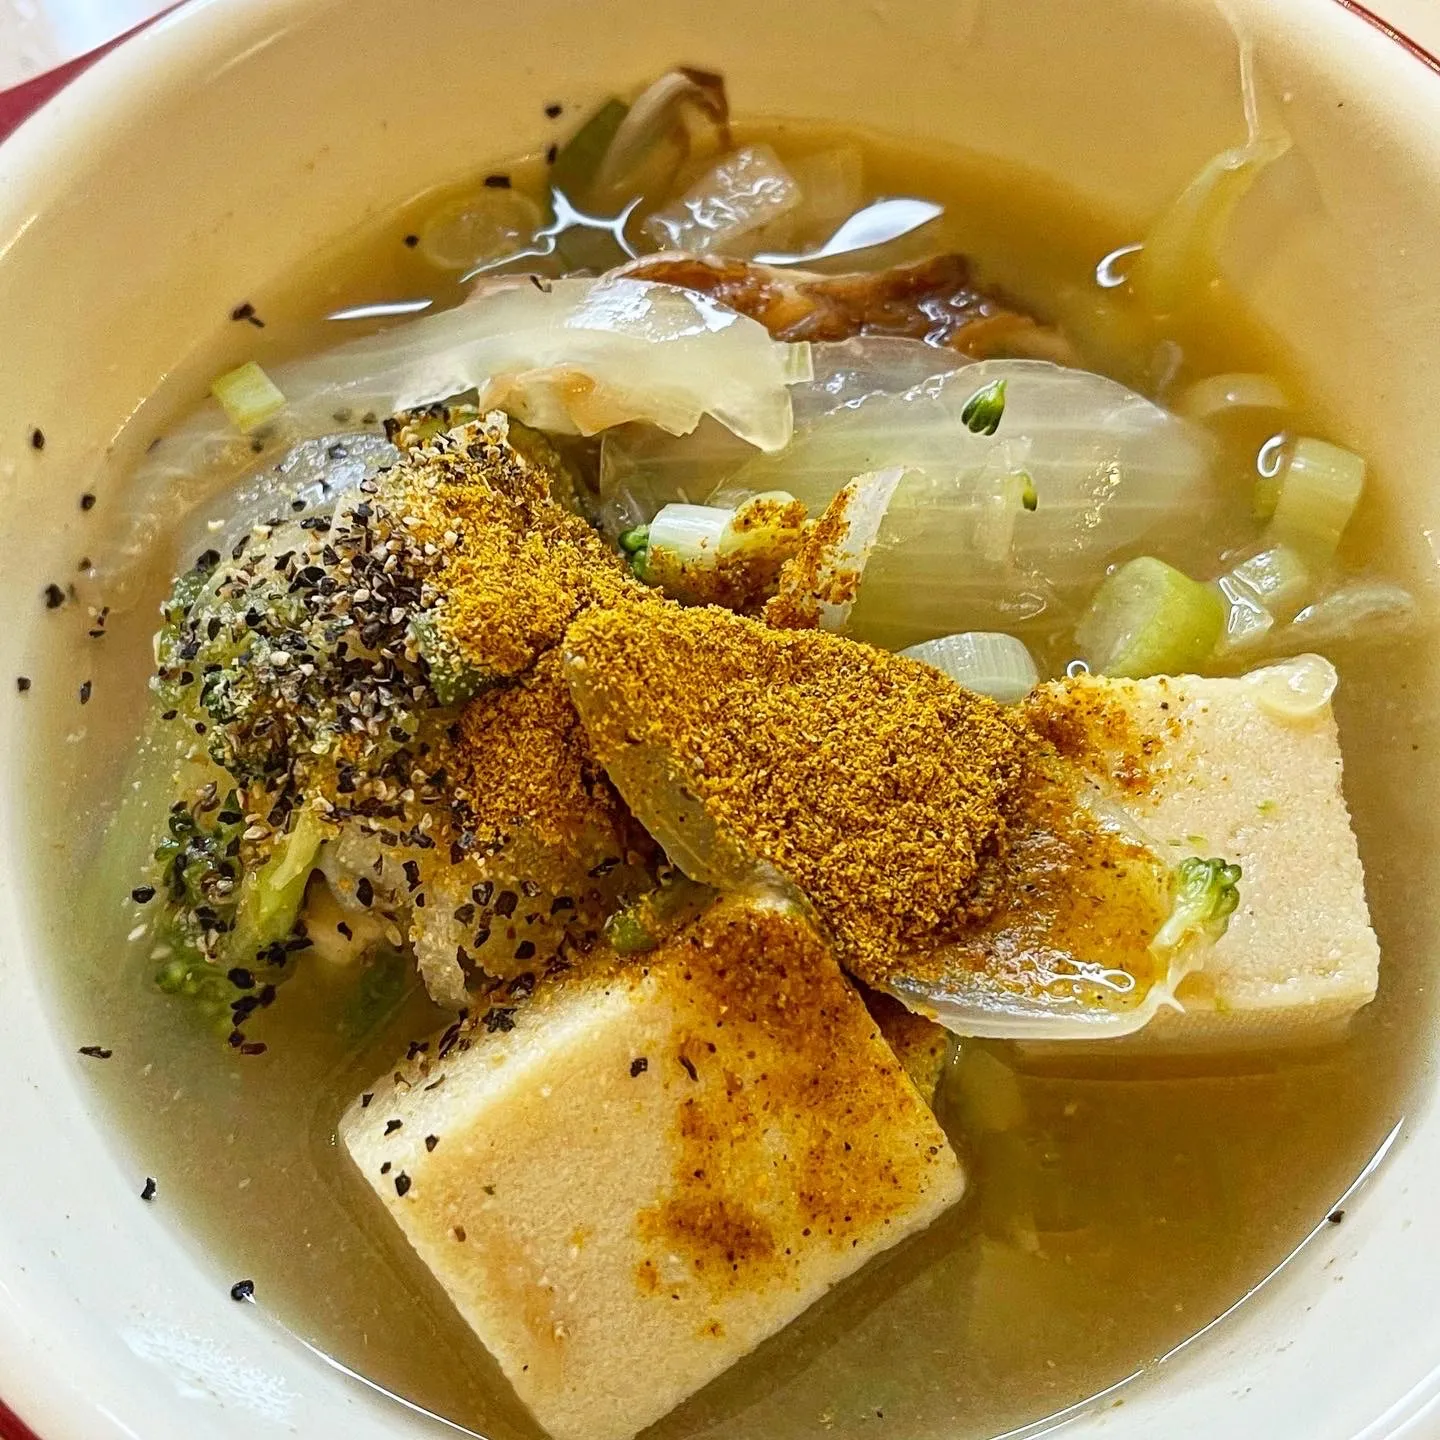 スープに高野豆腐で満足感と栄養素アップ